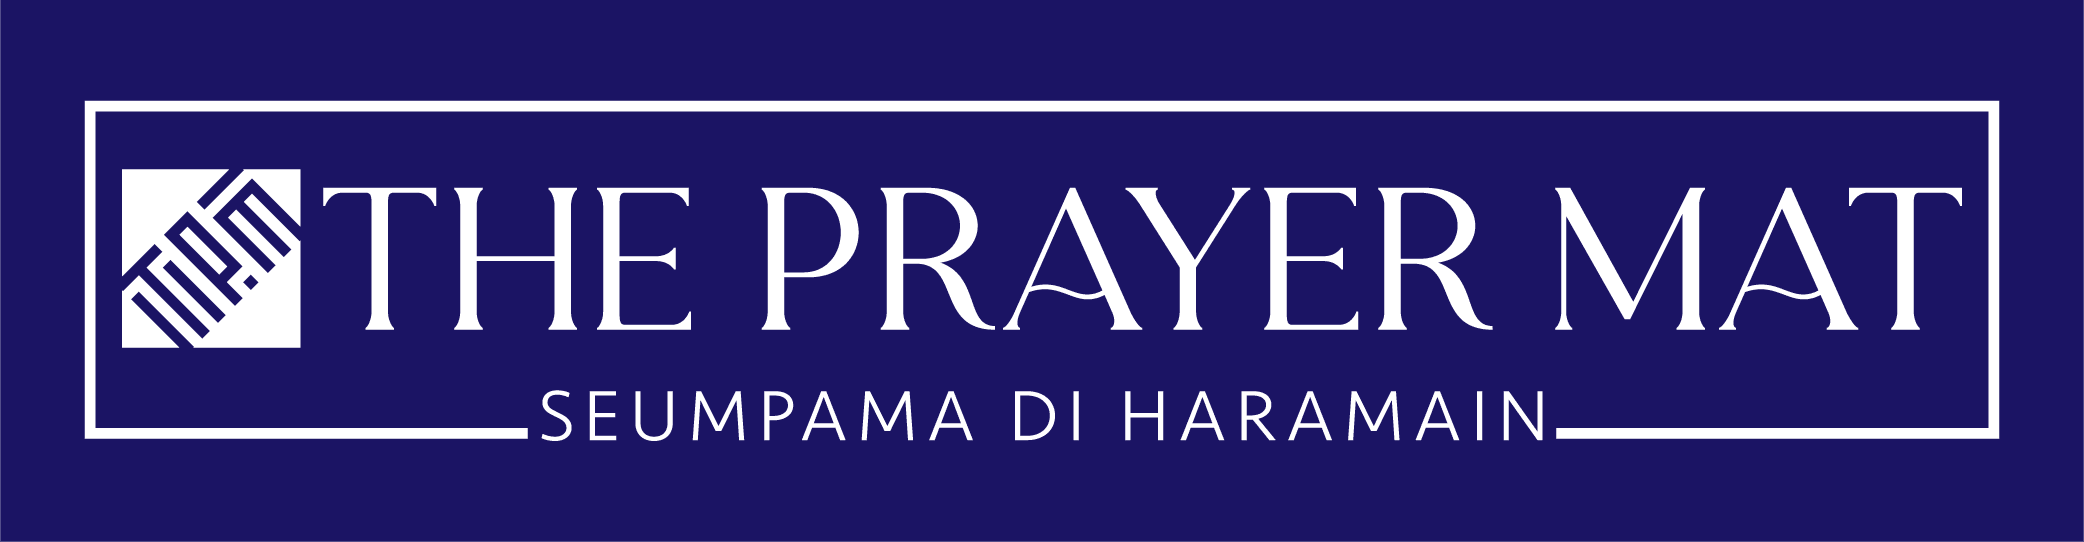 THE PRAYER MAT